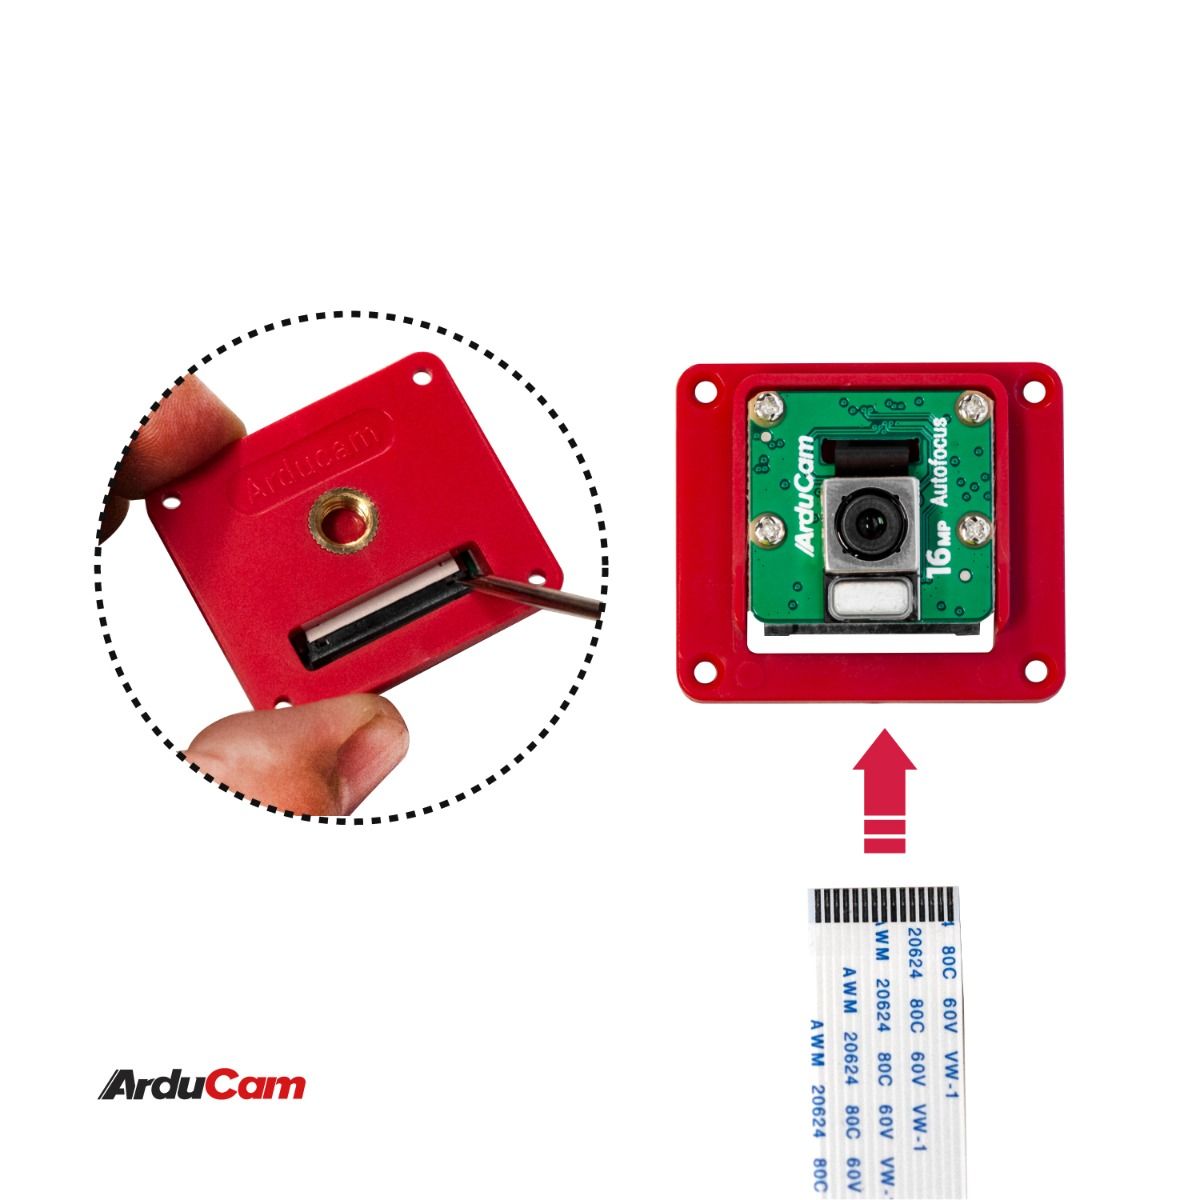 Arducam Acrylic Camera Enclosure Case for Raspberry Pi V1/V2/ and Arducam 16MP/64MP